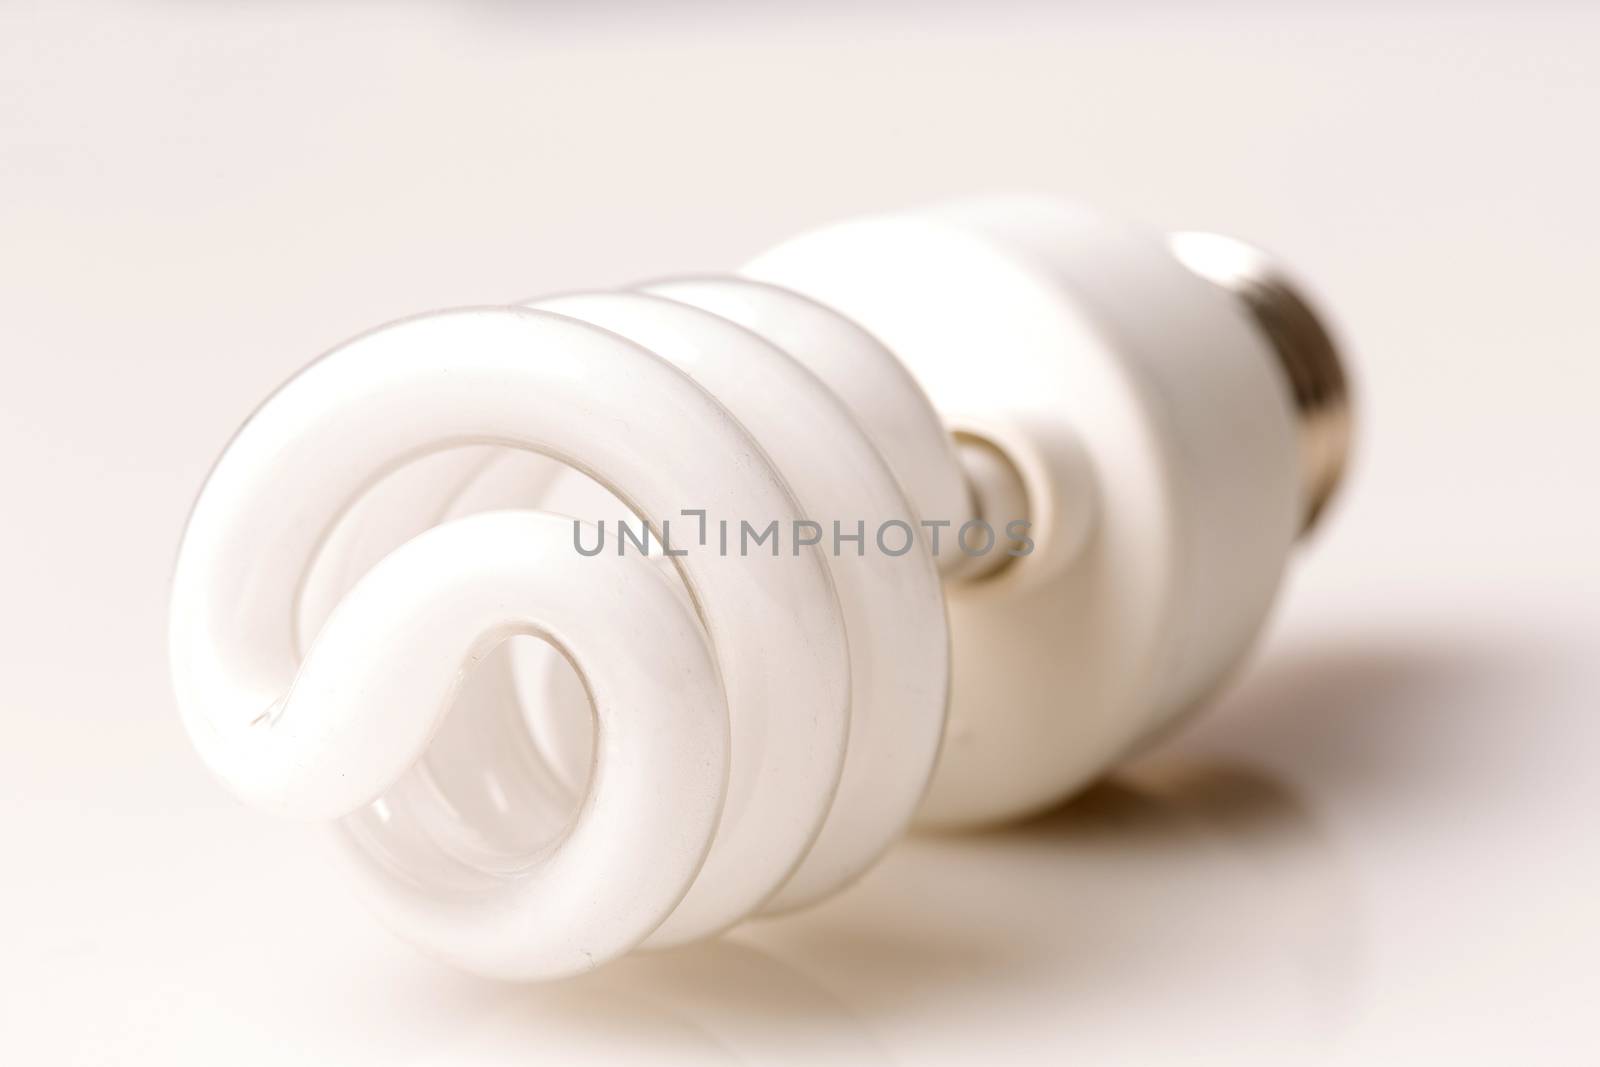 Spiral compact fluorescent light bulb (CFL)